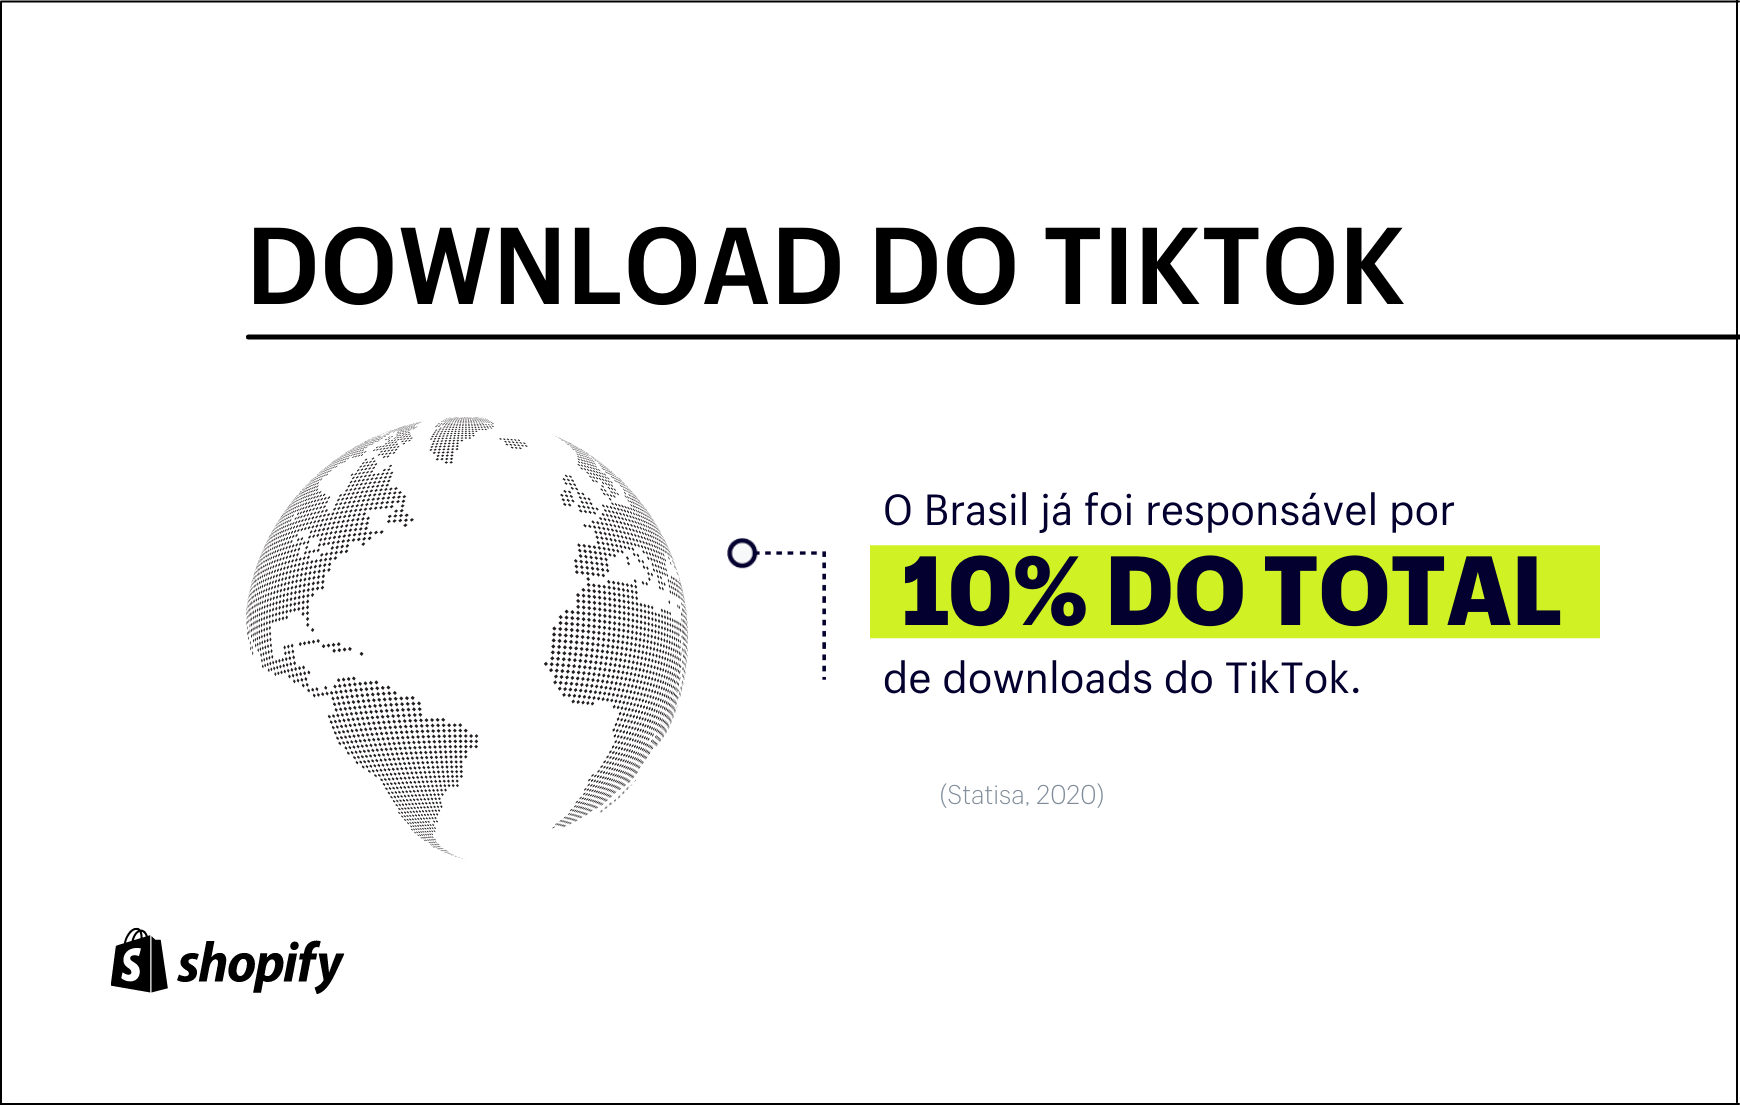 Infográfico com fundo branco. No primeiro plano, em verde e preto, há a informação de que o Brasil já foi responsável por 10% do total de downloads do TikTok.